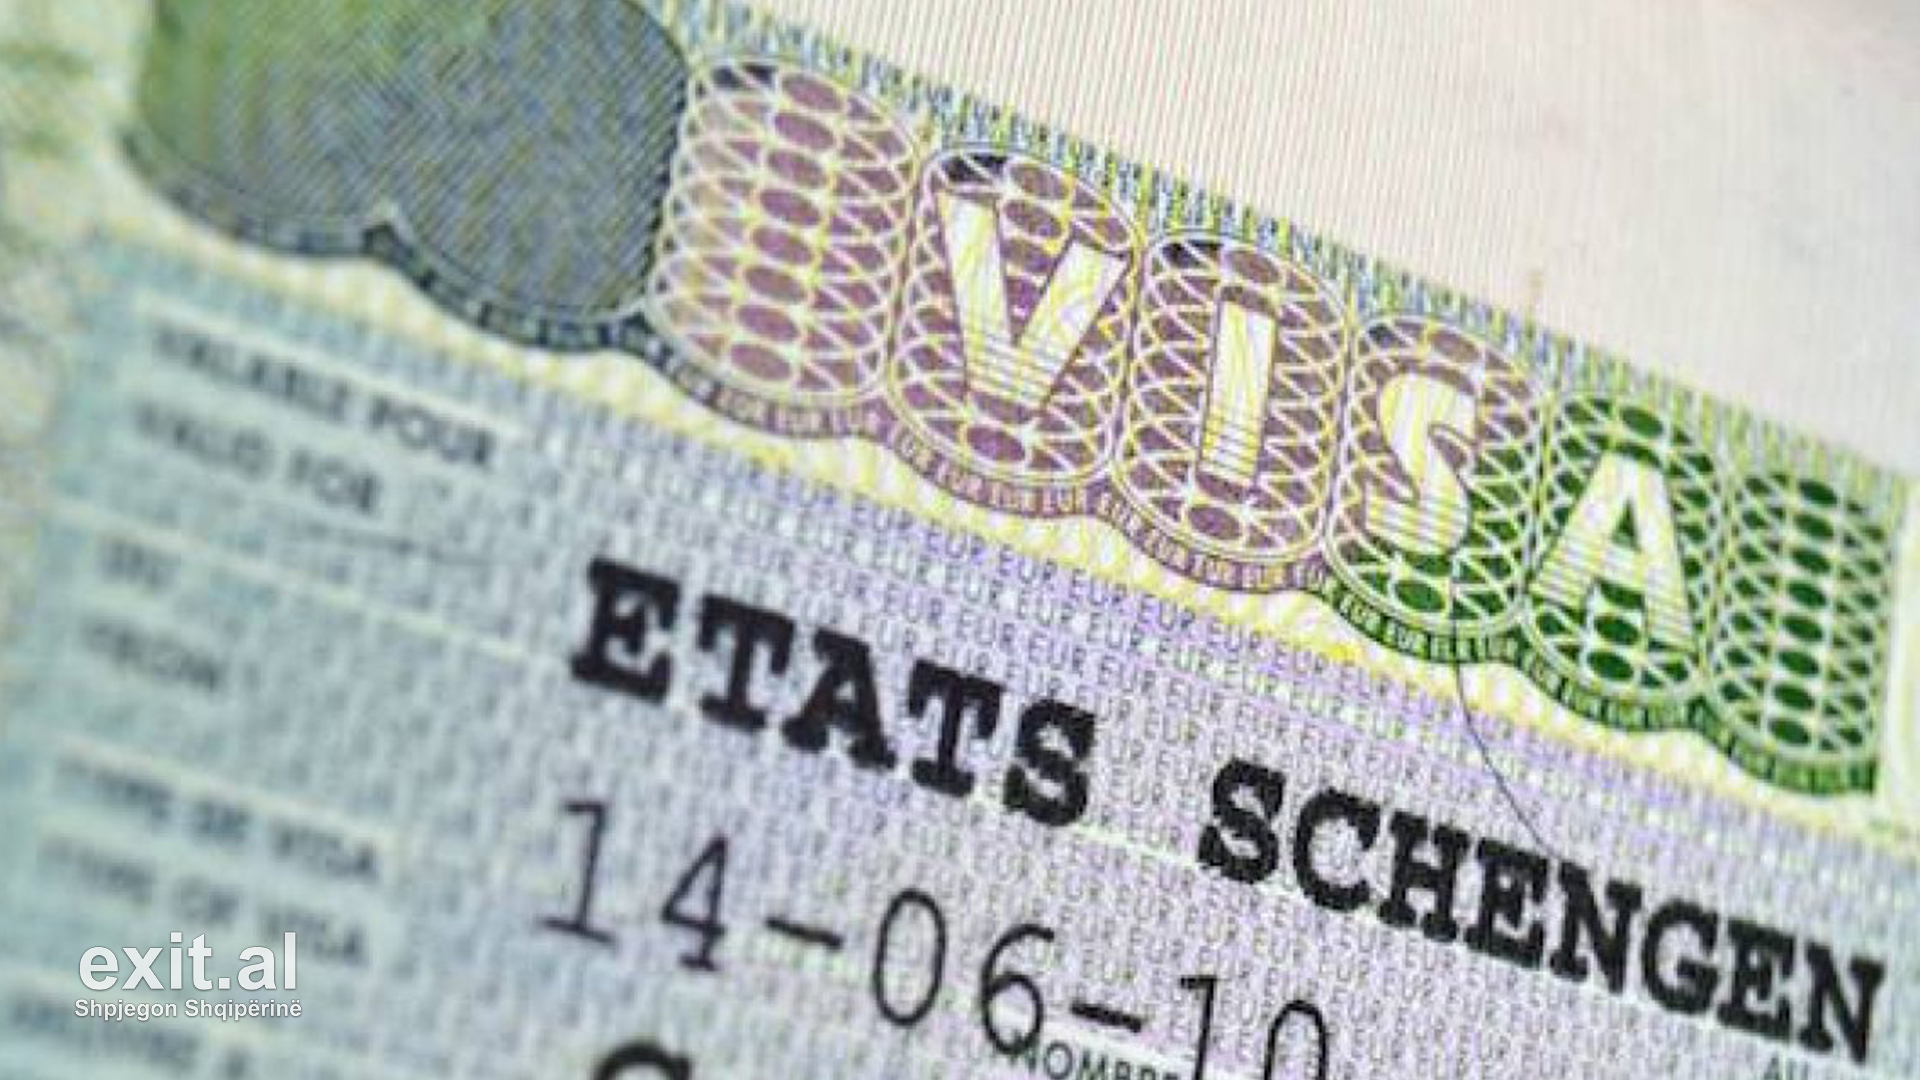 Gjermania dhe Franca kërkojnë rivendosjen e vizave